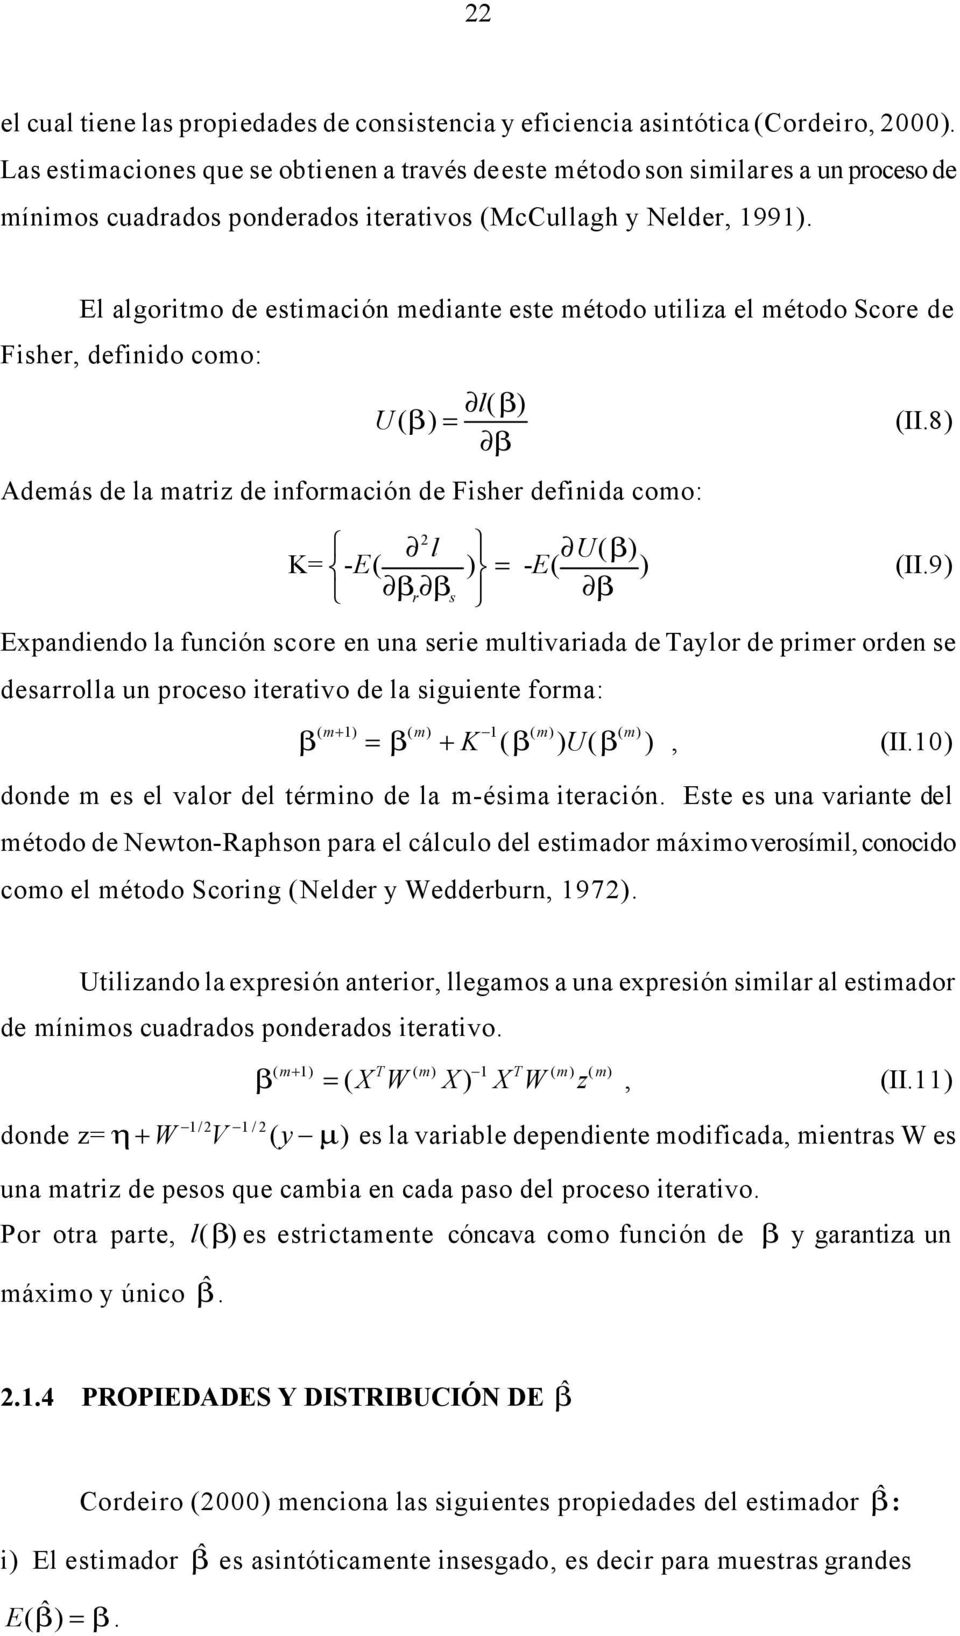 El algortmo de estmacón medante este método utlza el método Score de Fsher, defndo como: l( β) U ( β) = (II.8) β Además de la matrz de nformacón de Fsher defnda como: l U( β) K= - E( ) = - E( ) (II.